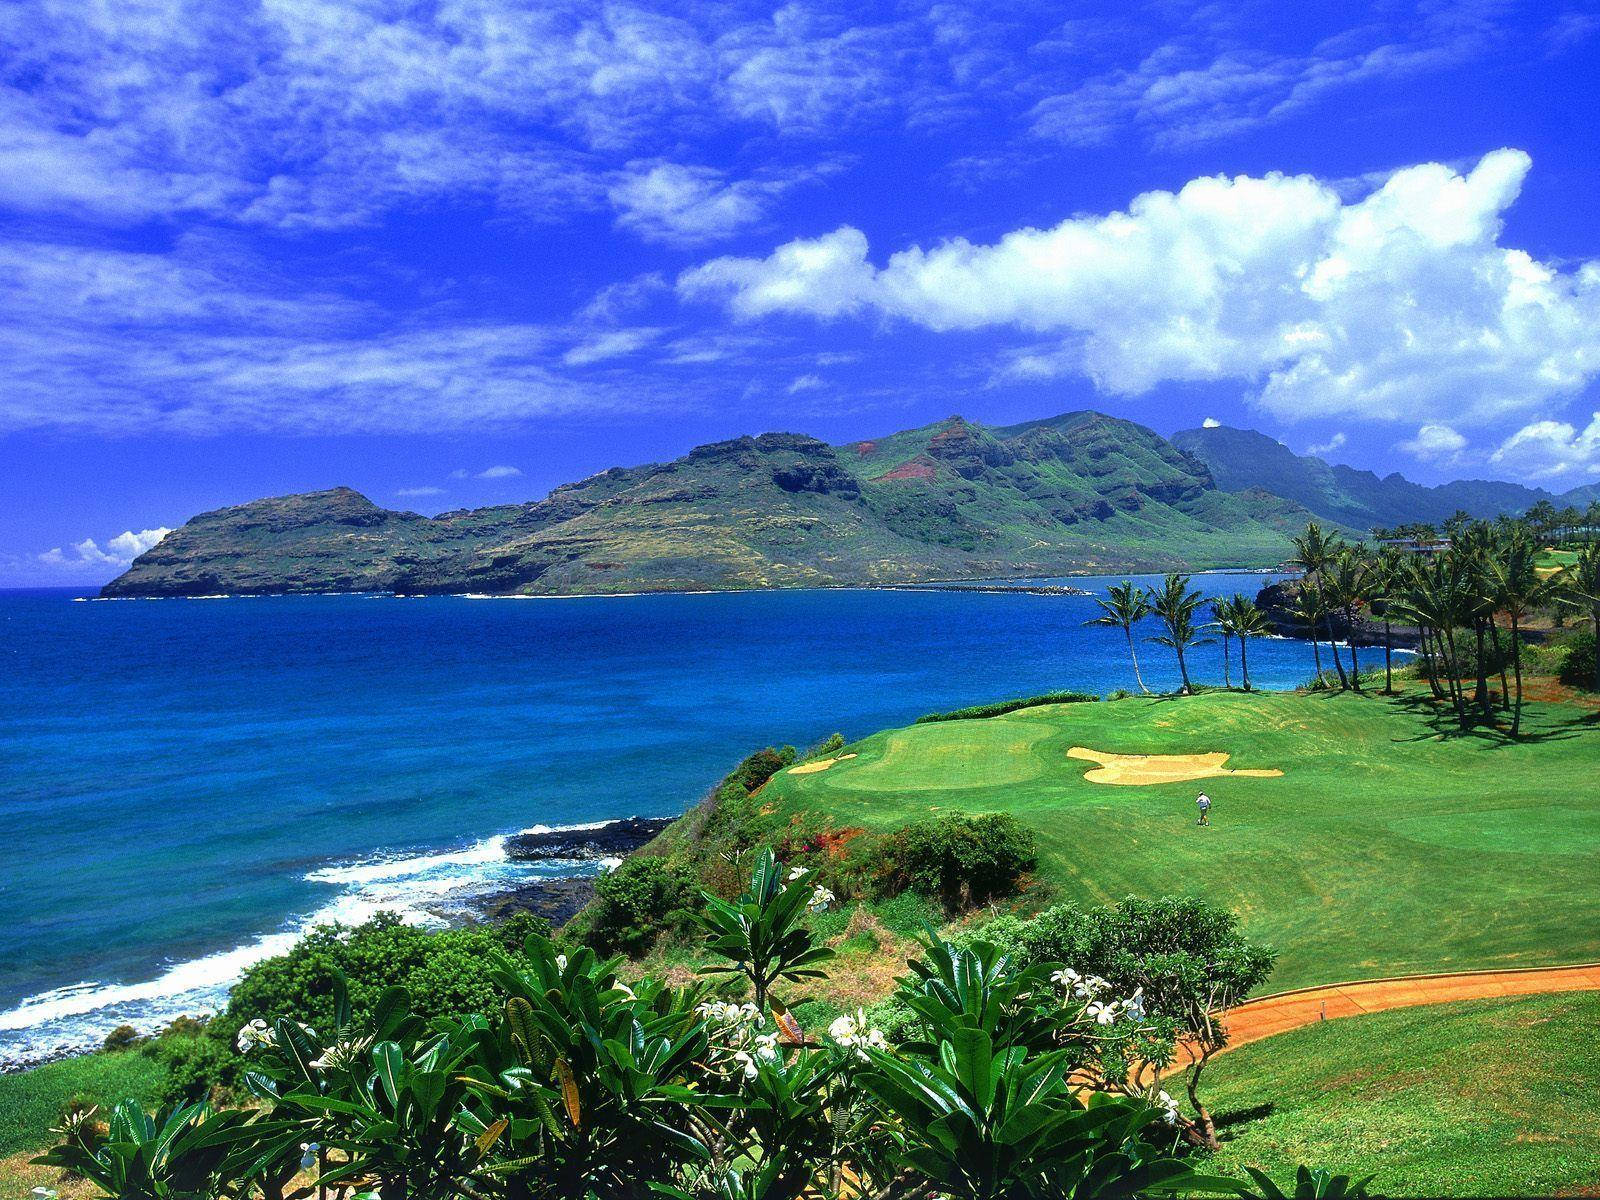 Ultra HD Golf Course Landskab - Lad dette panorama af en præstigefuld golfbane tage dig til en mere afslappende omgivelse. Wallpaper